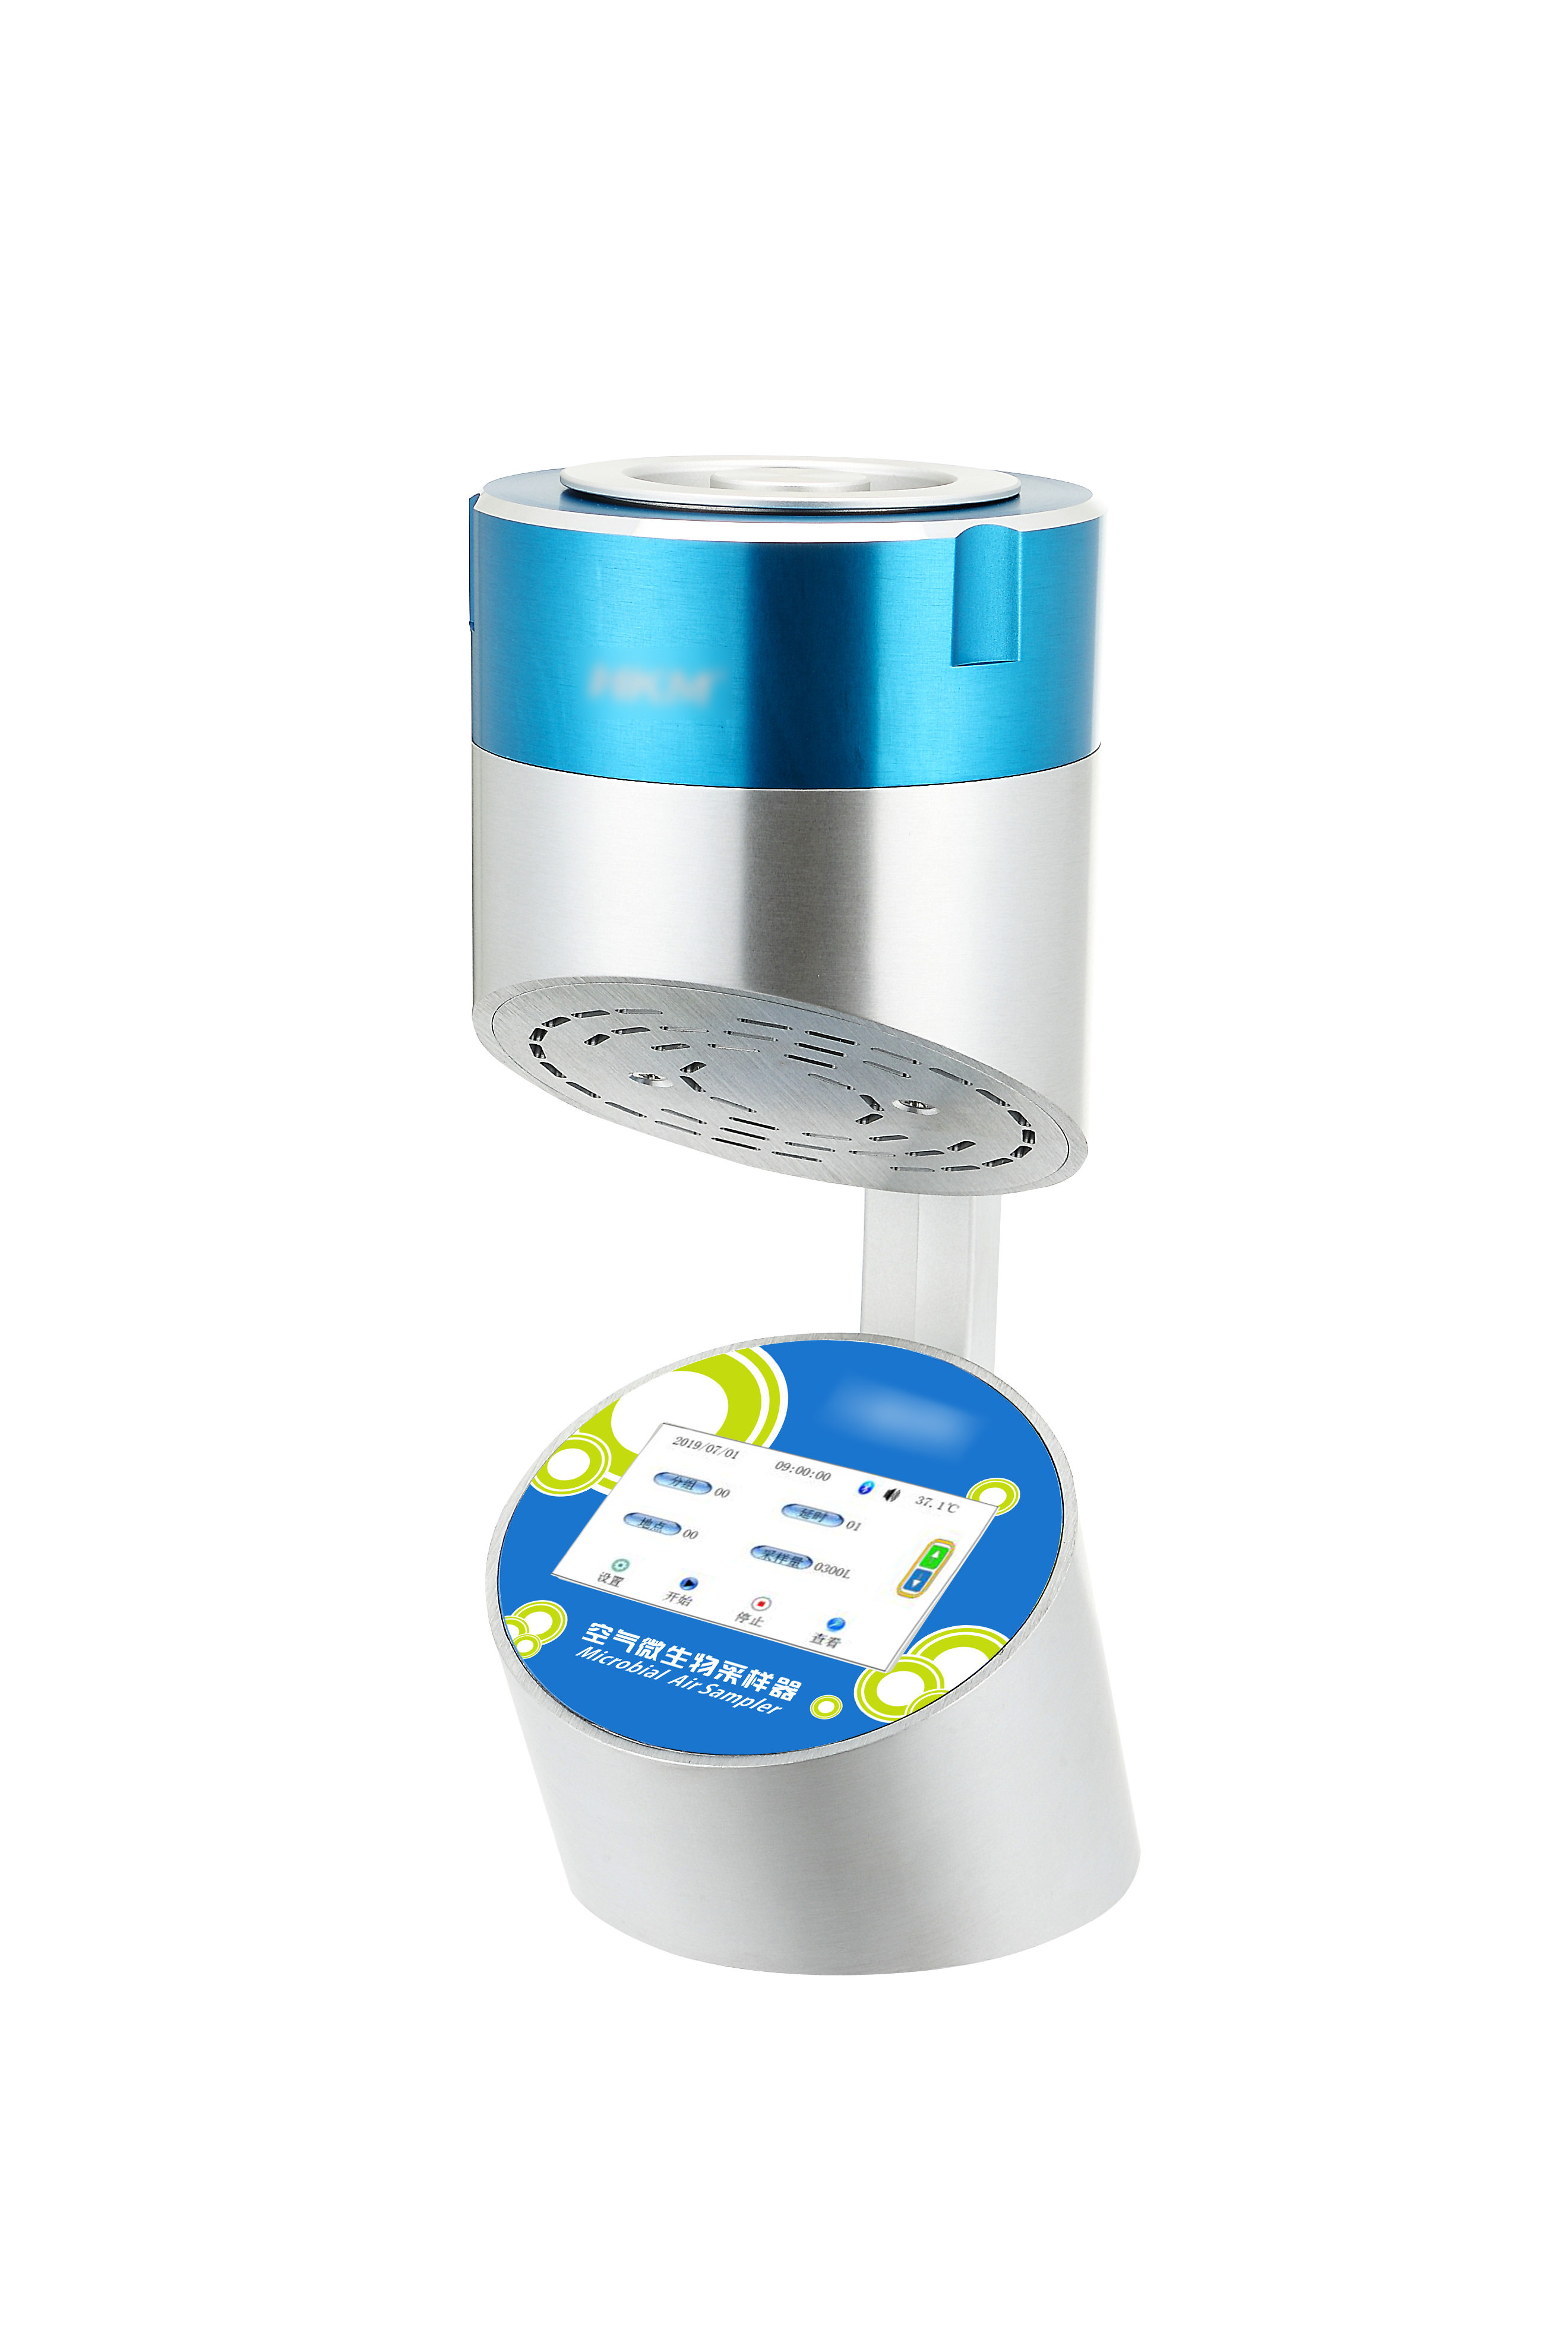 空气浮游微生物采样器（空气微生物采样器）HKM-Ⅲ-100 触摸屏 蓝牙版